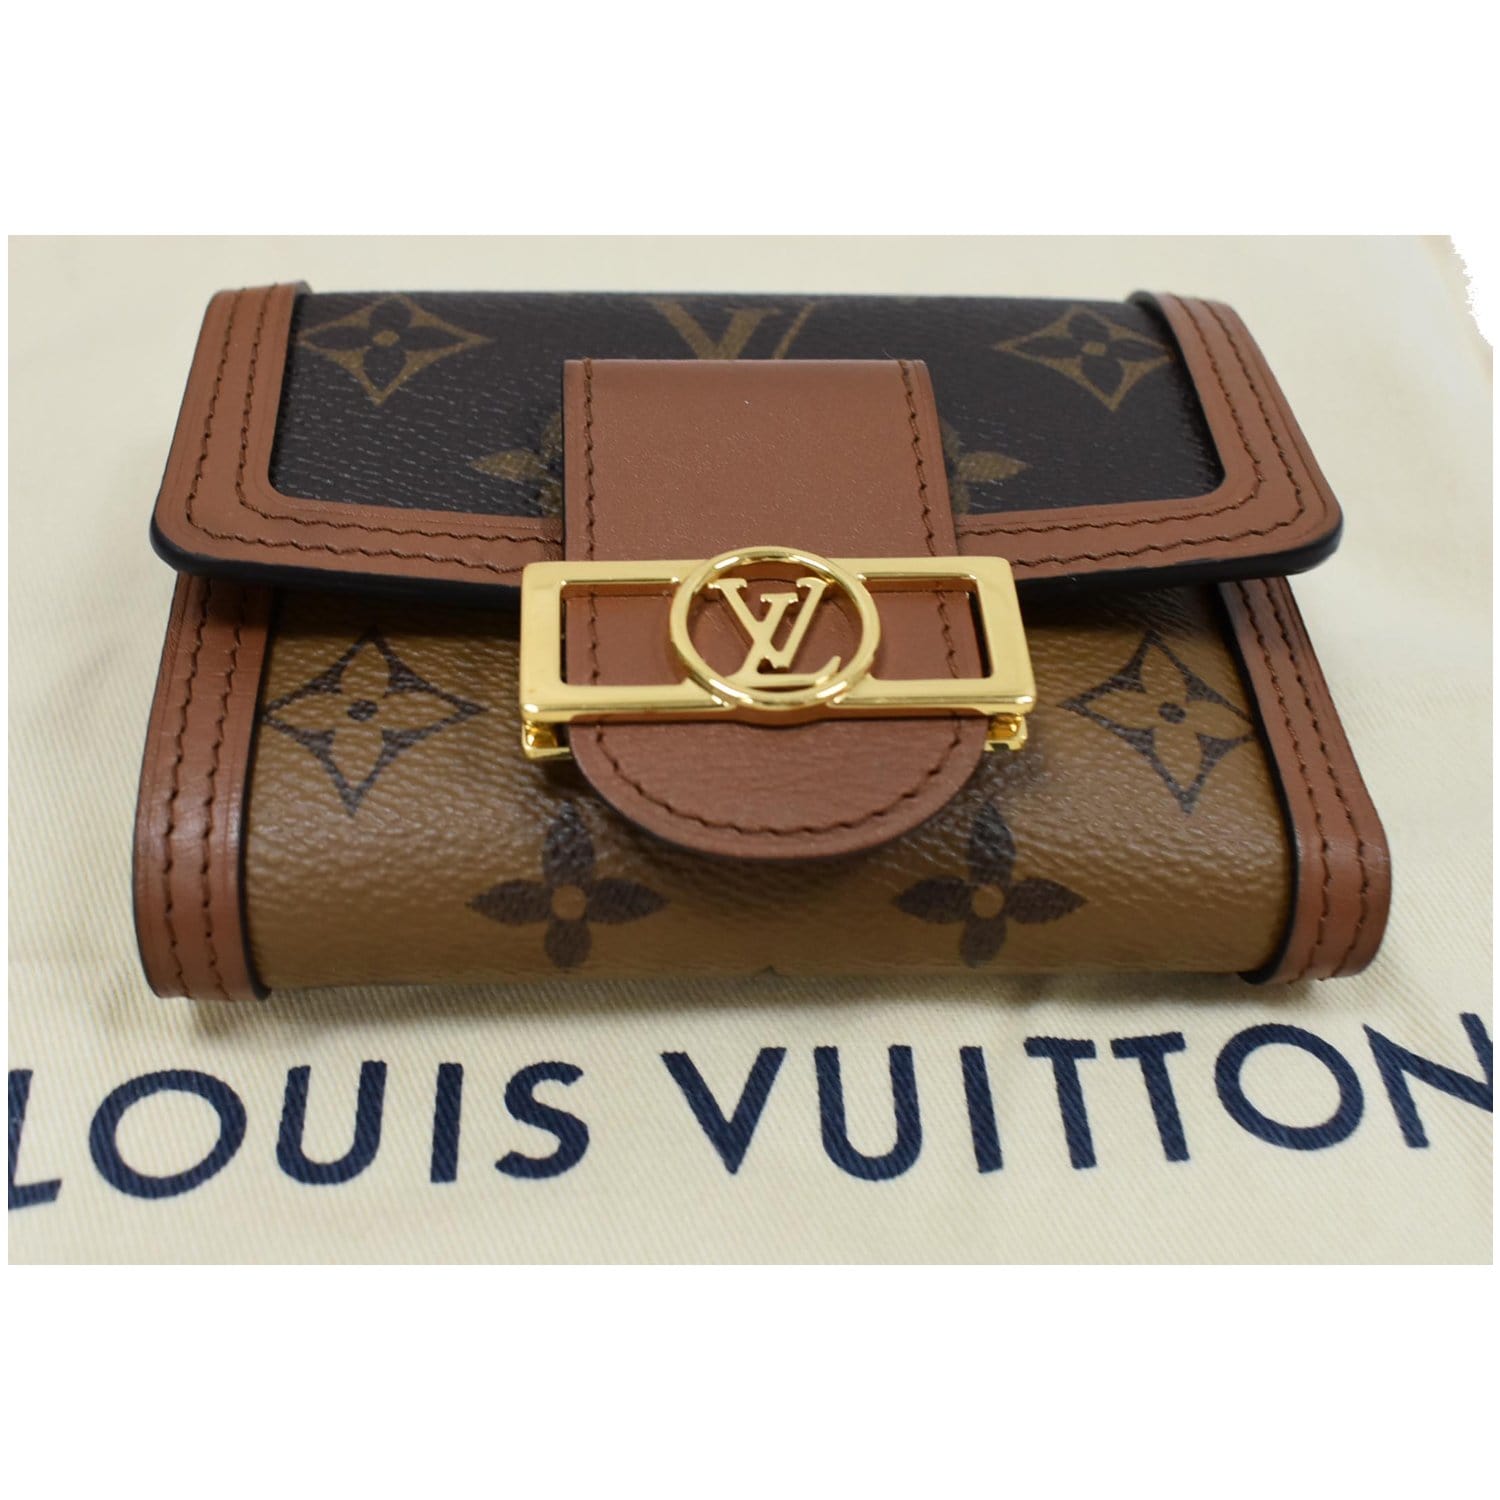 Louis Vuitton Wallet Purse Monogram Brown Woman unisex Authentic